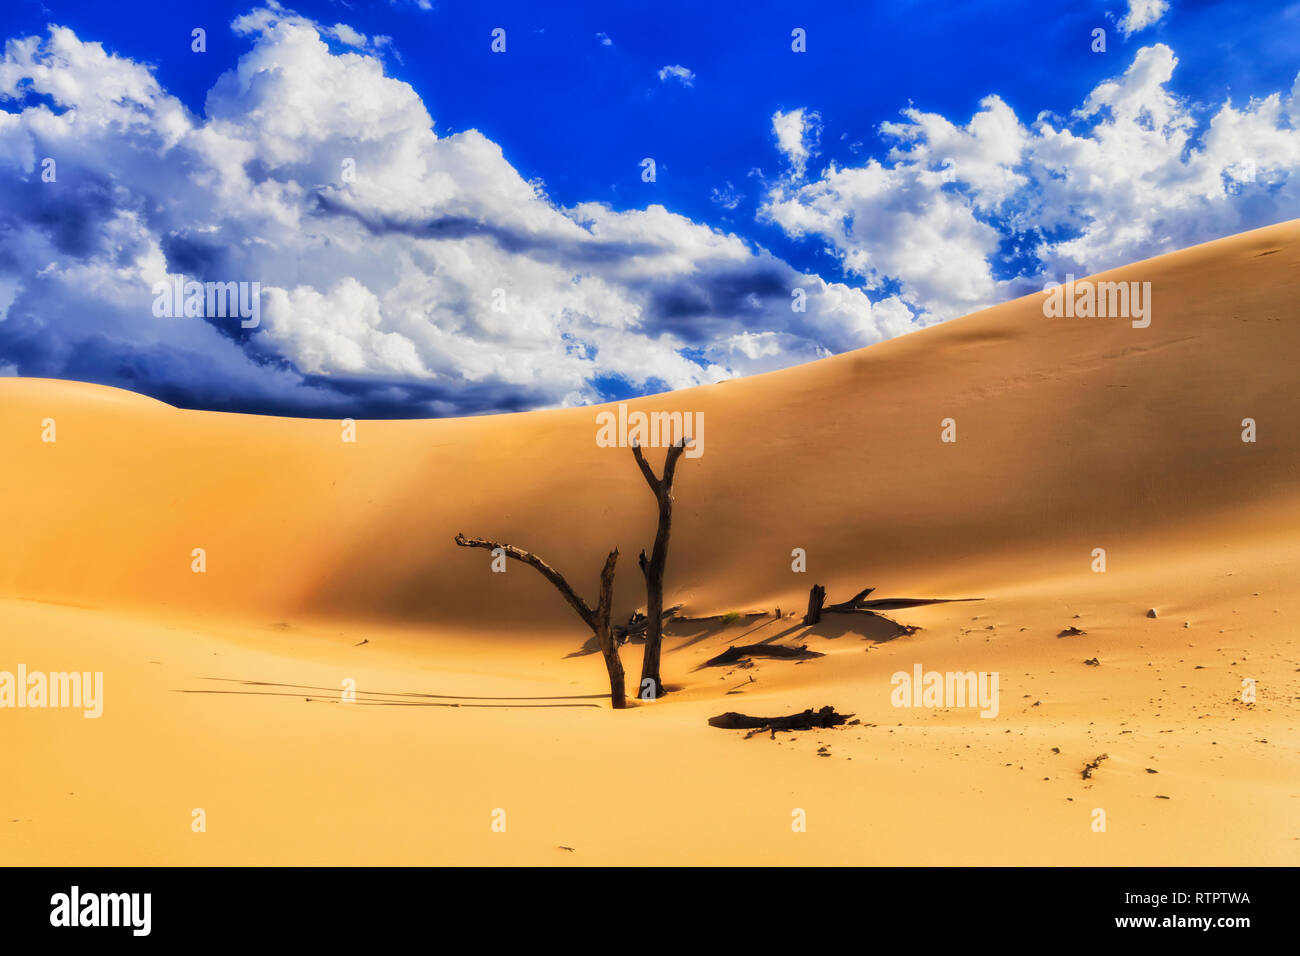 Secado inertes a los troncos de los árboles que sobresalen de la arena contra enormes dunas de arena caliente bajo el cielo azul, en un día soleado de verano en Stockton Beach - Worimi australiano Foto de stock